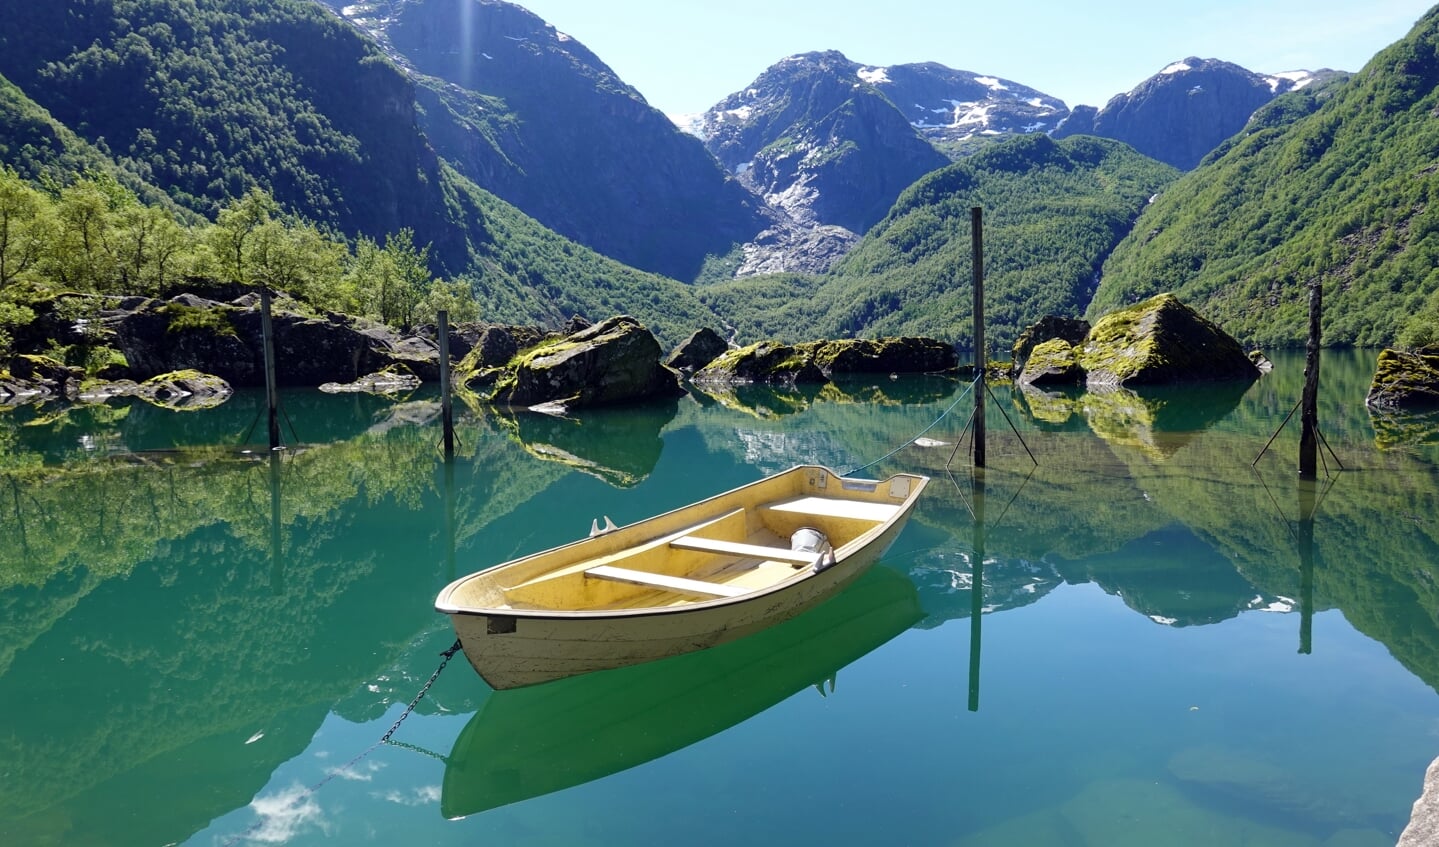 Schitterend uitzicht op de gletsjer over het spiegelende water van Bondhusvatnet in het Nationaal Park Folgefonna in Noorwegen. Het bootje ligt er volgens mij enkel voor de vele toeristen die hier komen om een foto te maken, maar dan heb je wel een mooi plaatje.